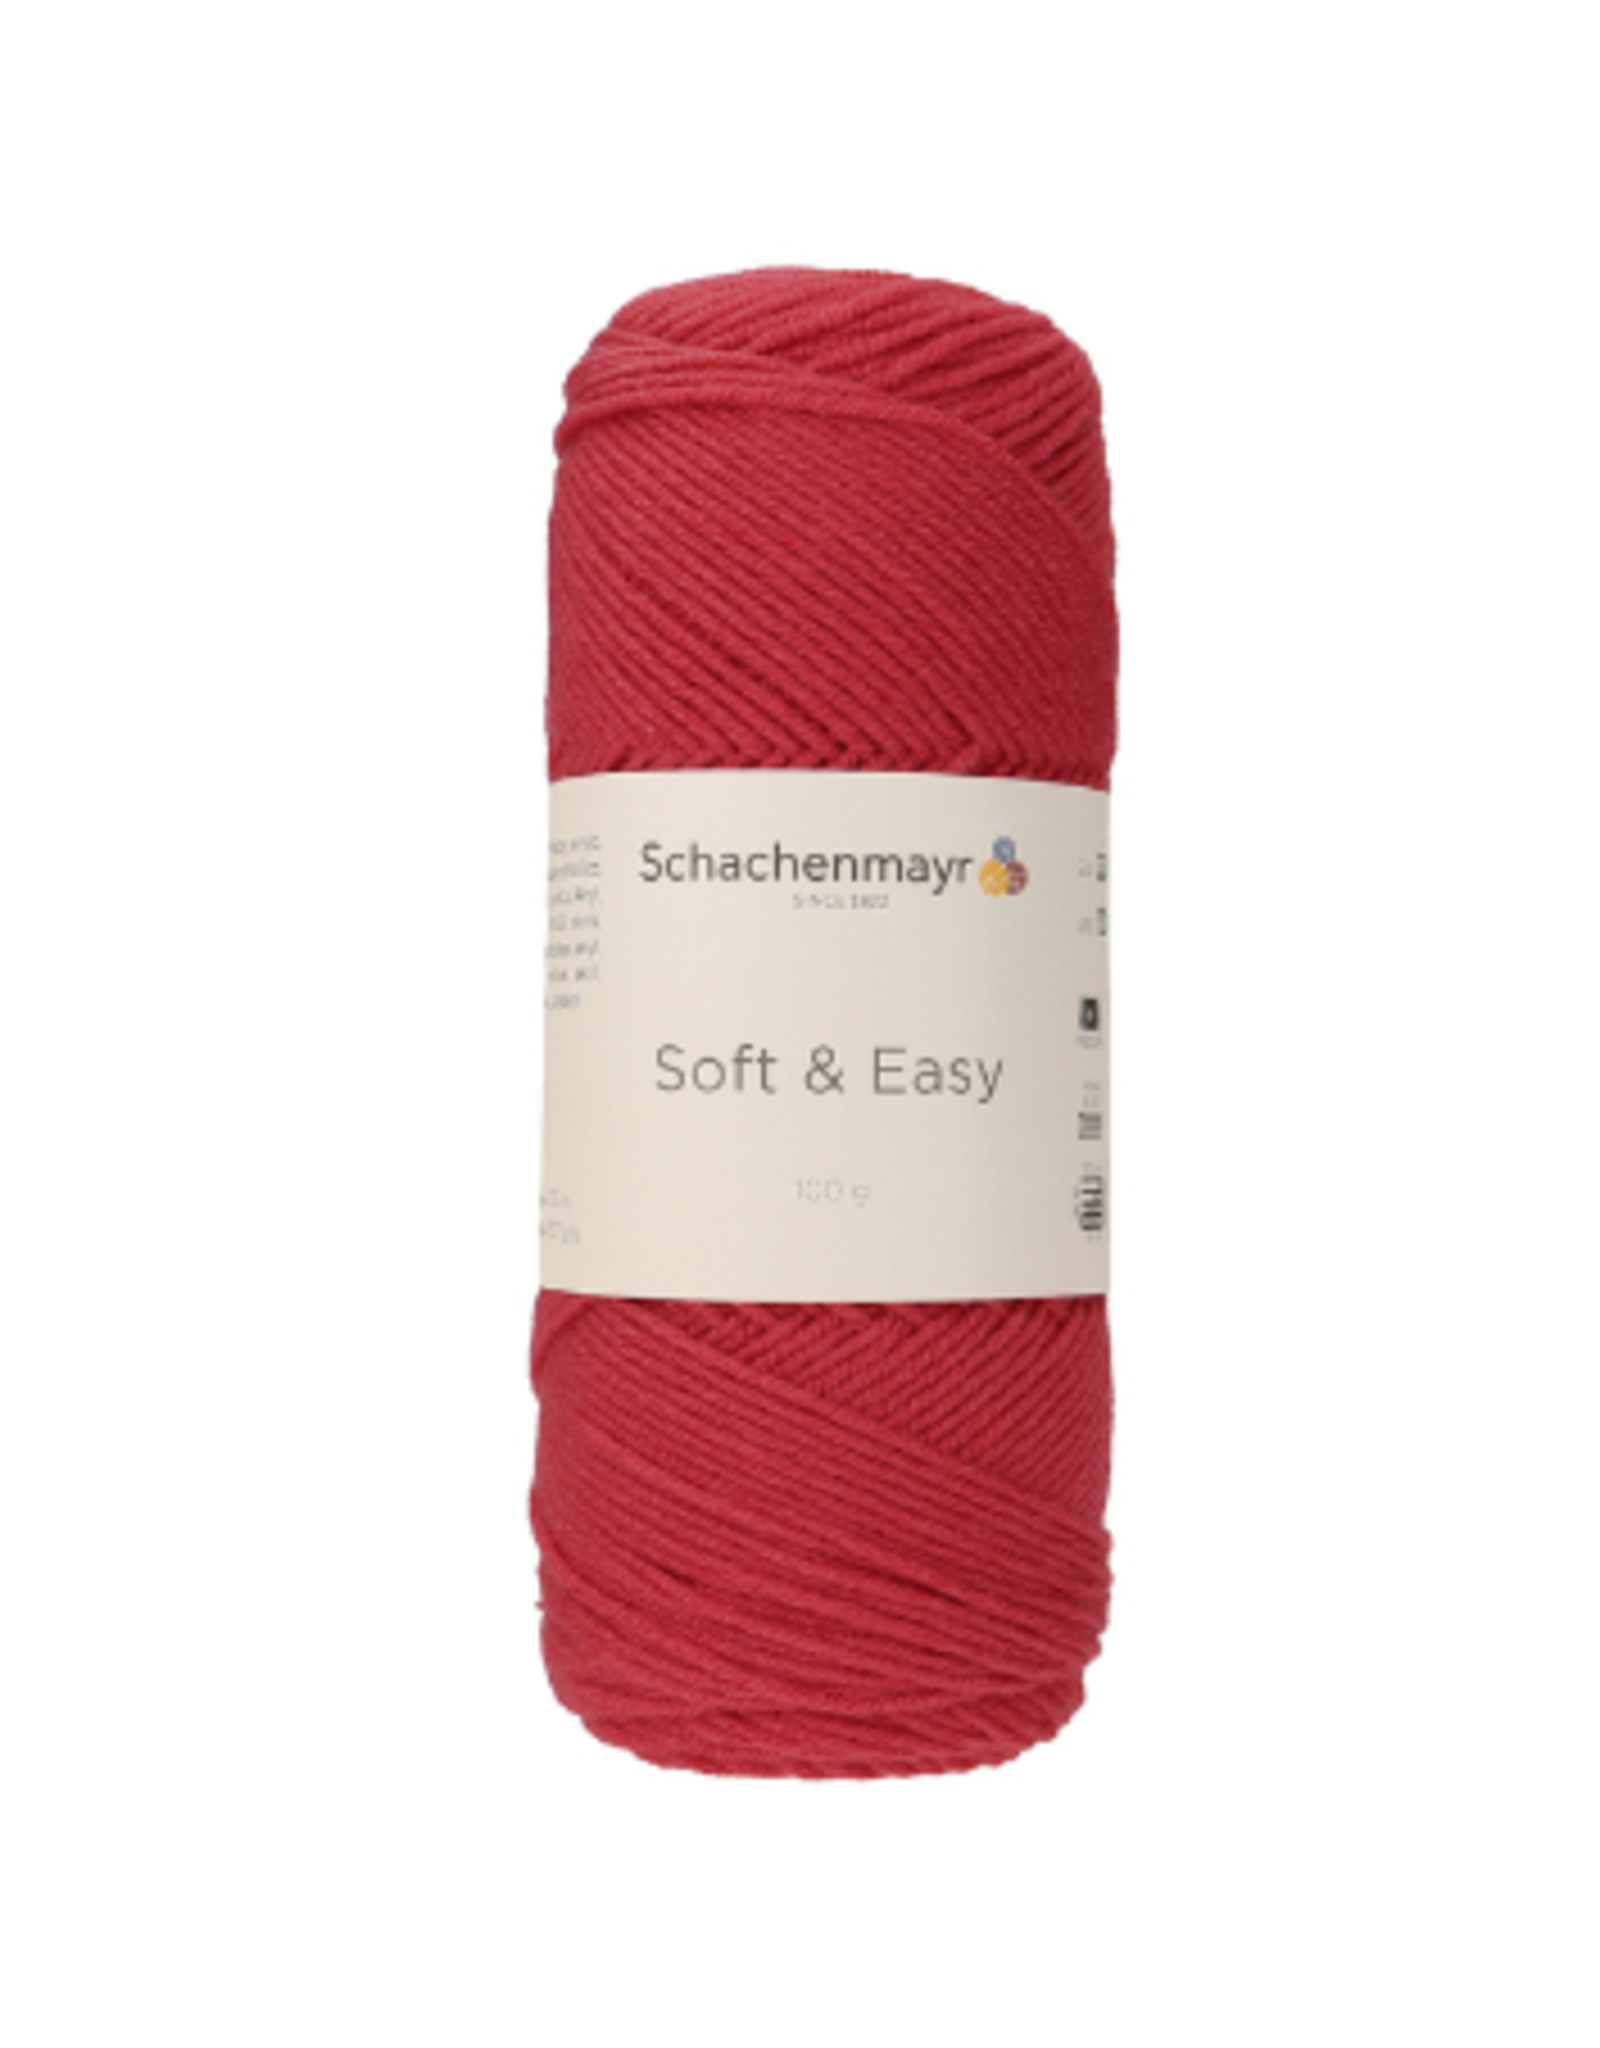 Schachenmayr Schachenmayr Soft & easy 33